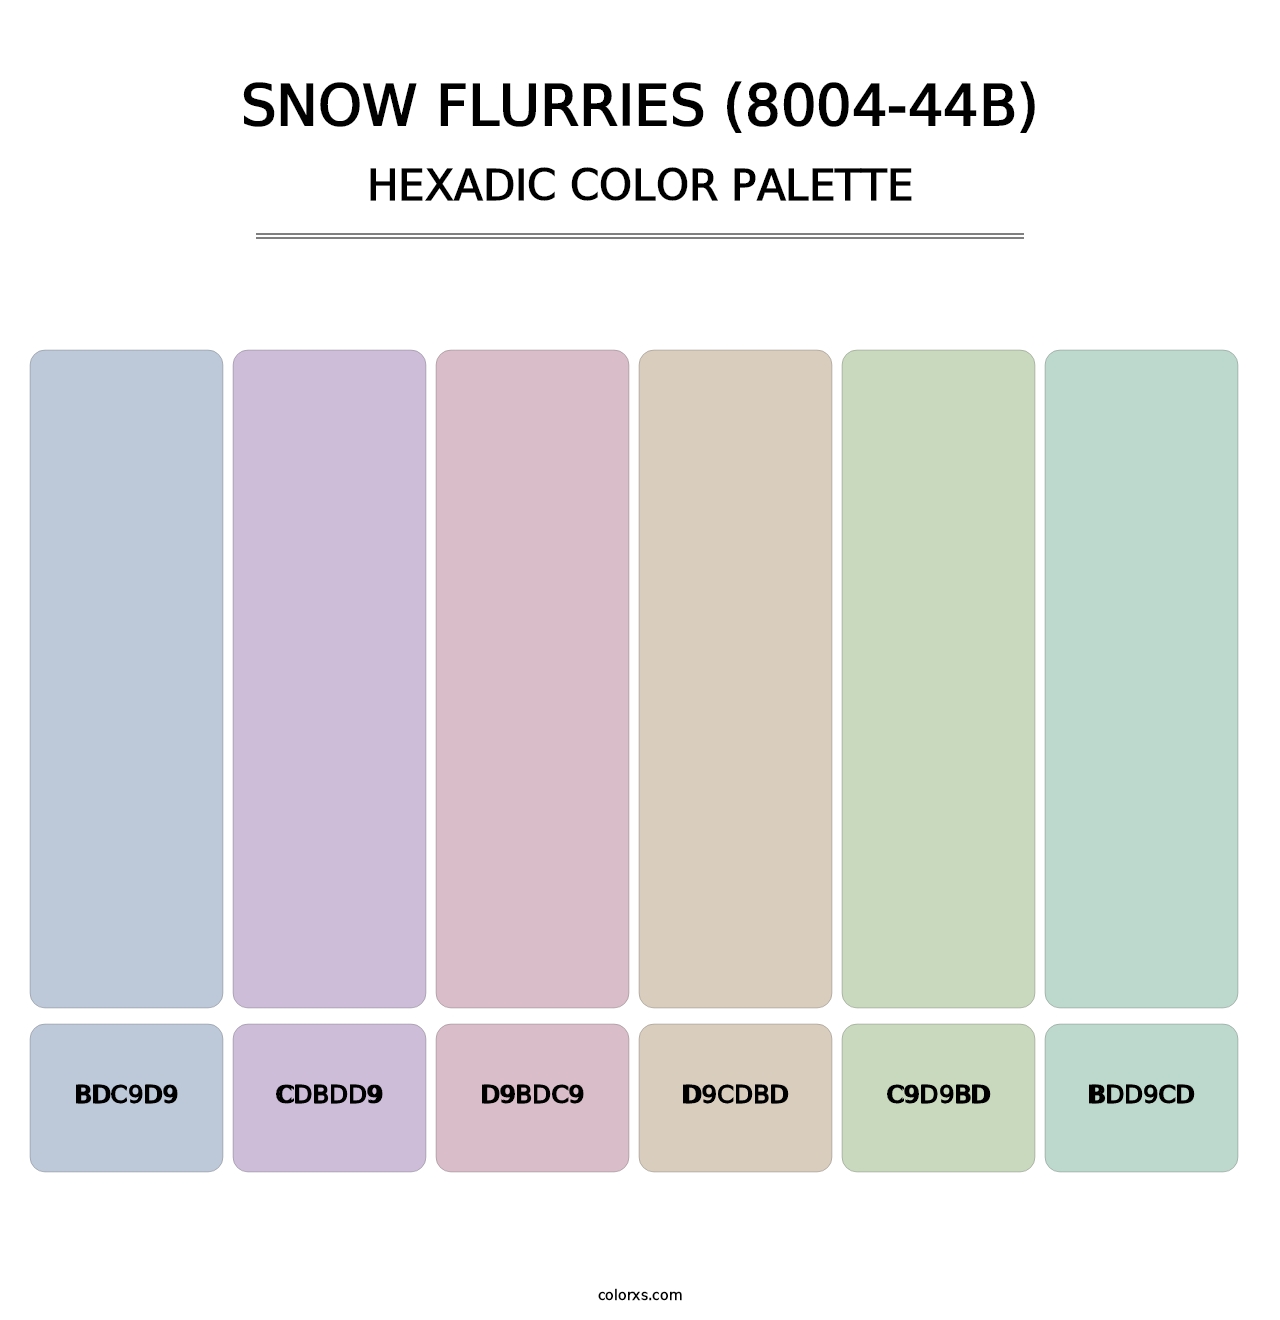 Snow Flurries (8004-44B) - Hexadic Color Palette